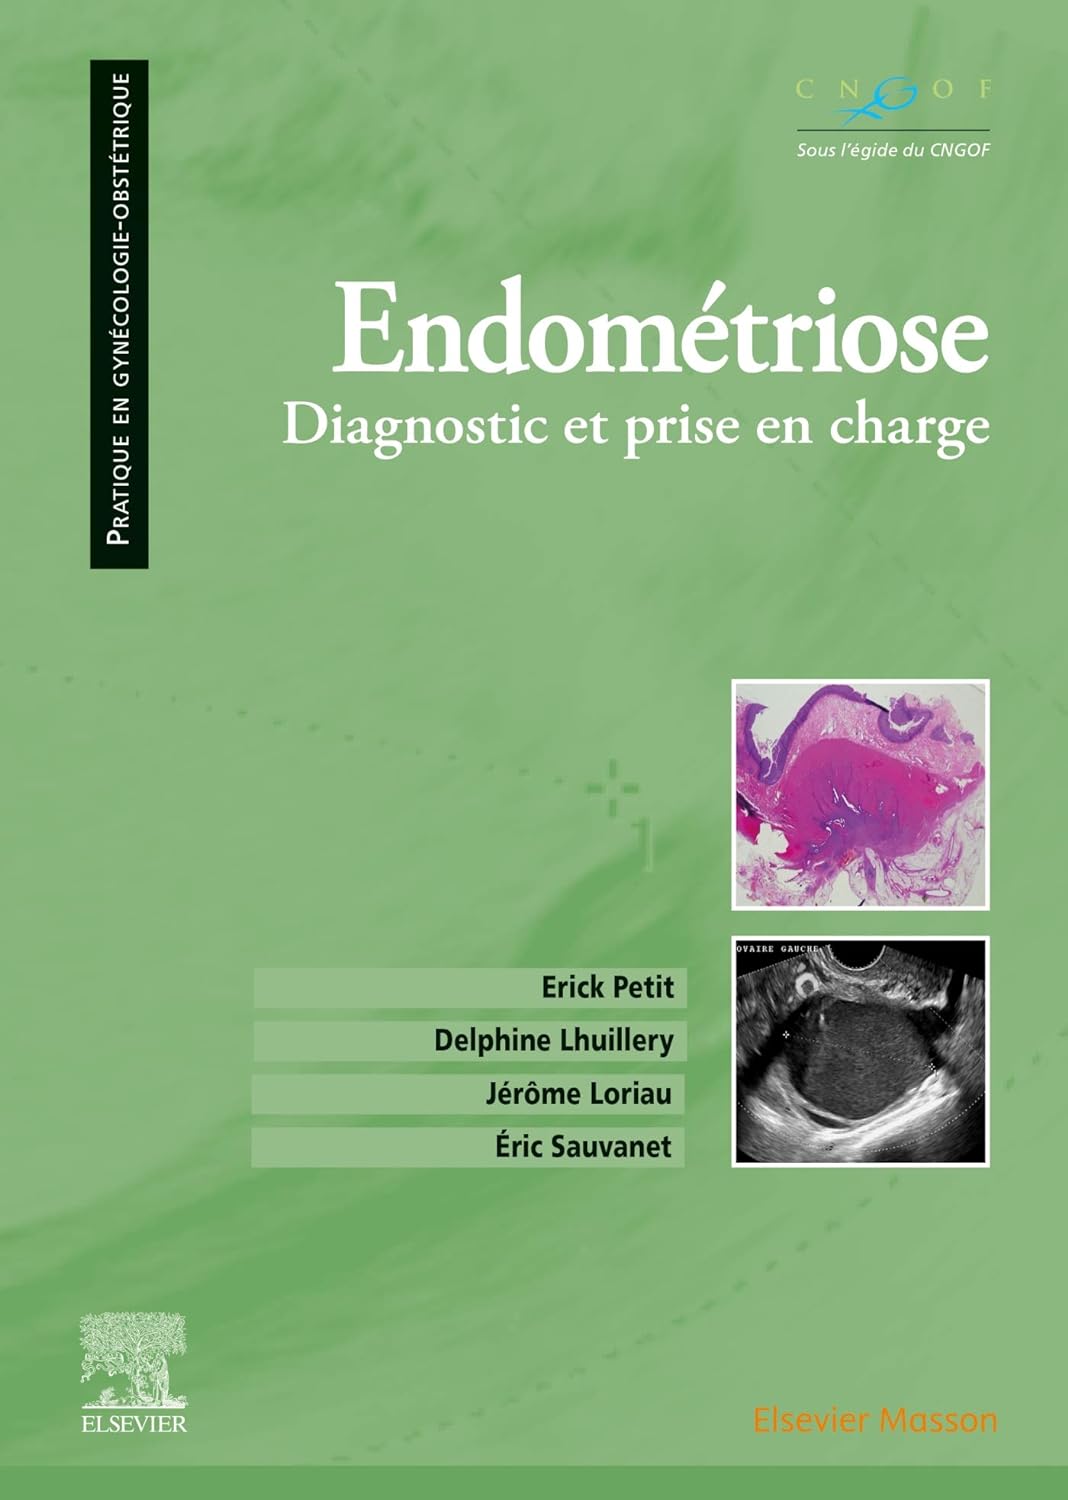 LIVRE - "Endométriose: Diagnostic et prise en charge"